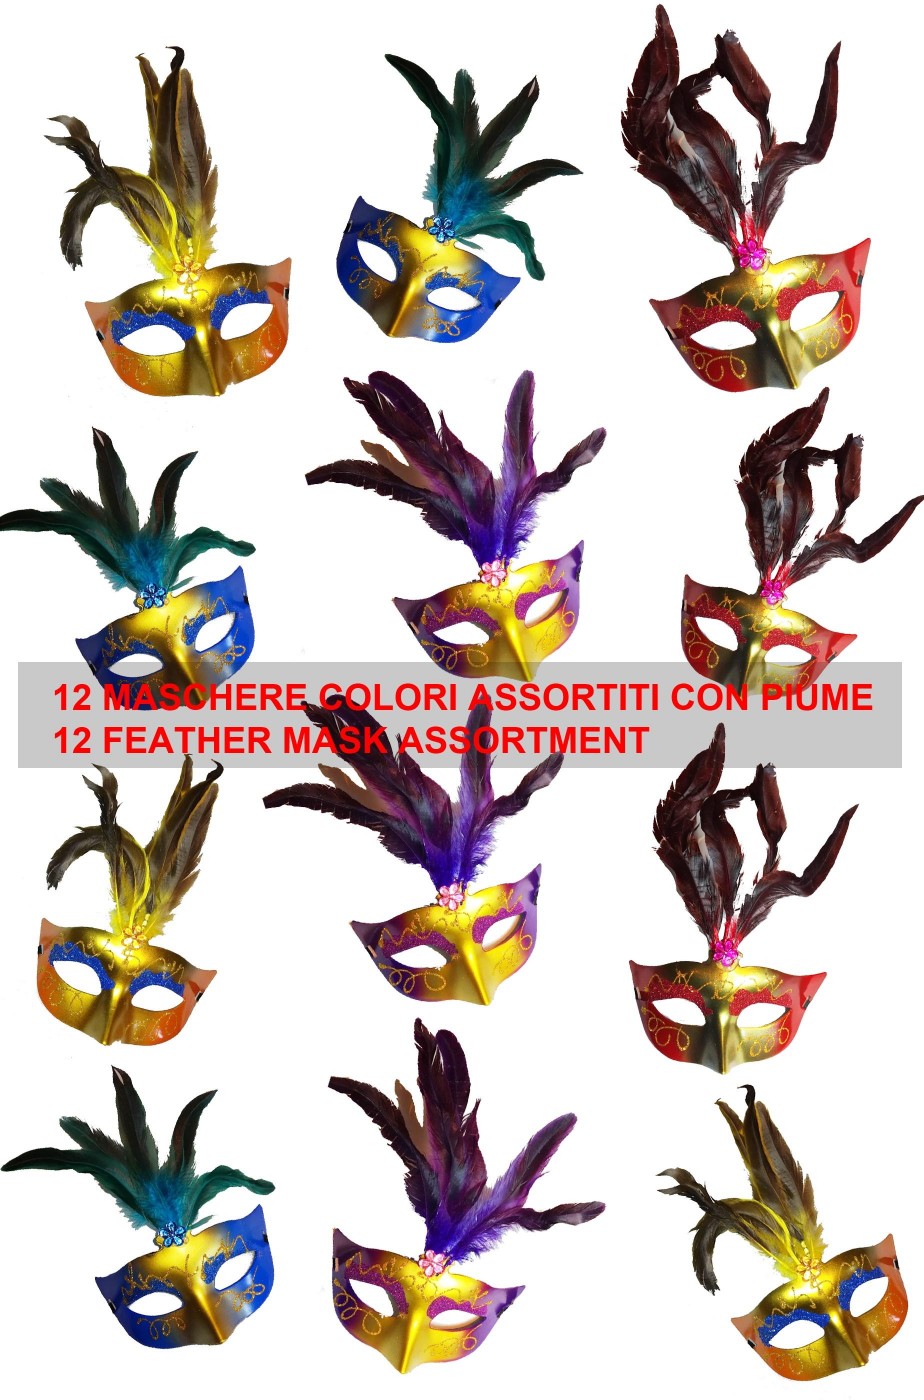 Assortimento maschere di carnevale veneziane con piume per festa 12 pezzi